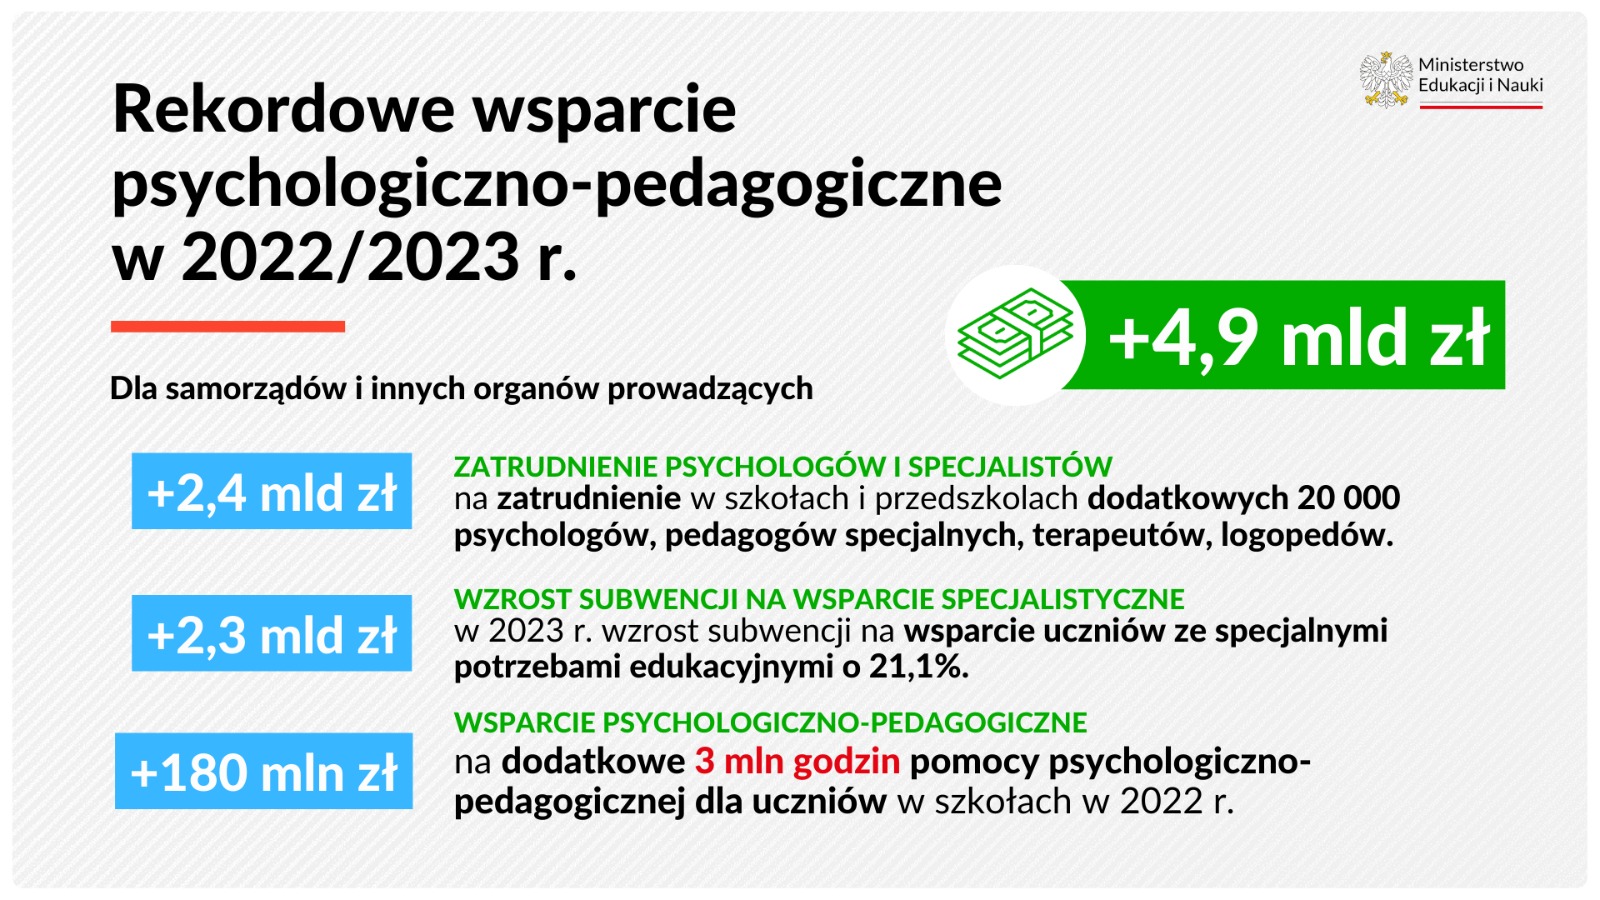 Rekordowe wsparcie psychologiczno-pedagogiczne w 2022/2023 r. - dla samorządów i innych organów prowadzących + 4,9 mld zł. +2,4 mld zł - zatrudnienie psychologów i specjalistów, + 2,3 mld zł - wzrost subwencji na wsparcie specjalistyczne, + 180 mln zł - wsparcie psychologiczno-pedagogiczne.